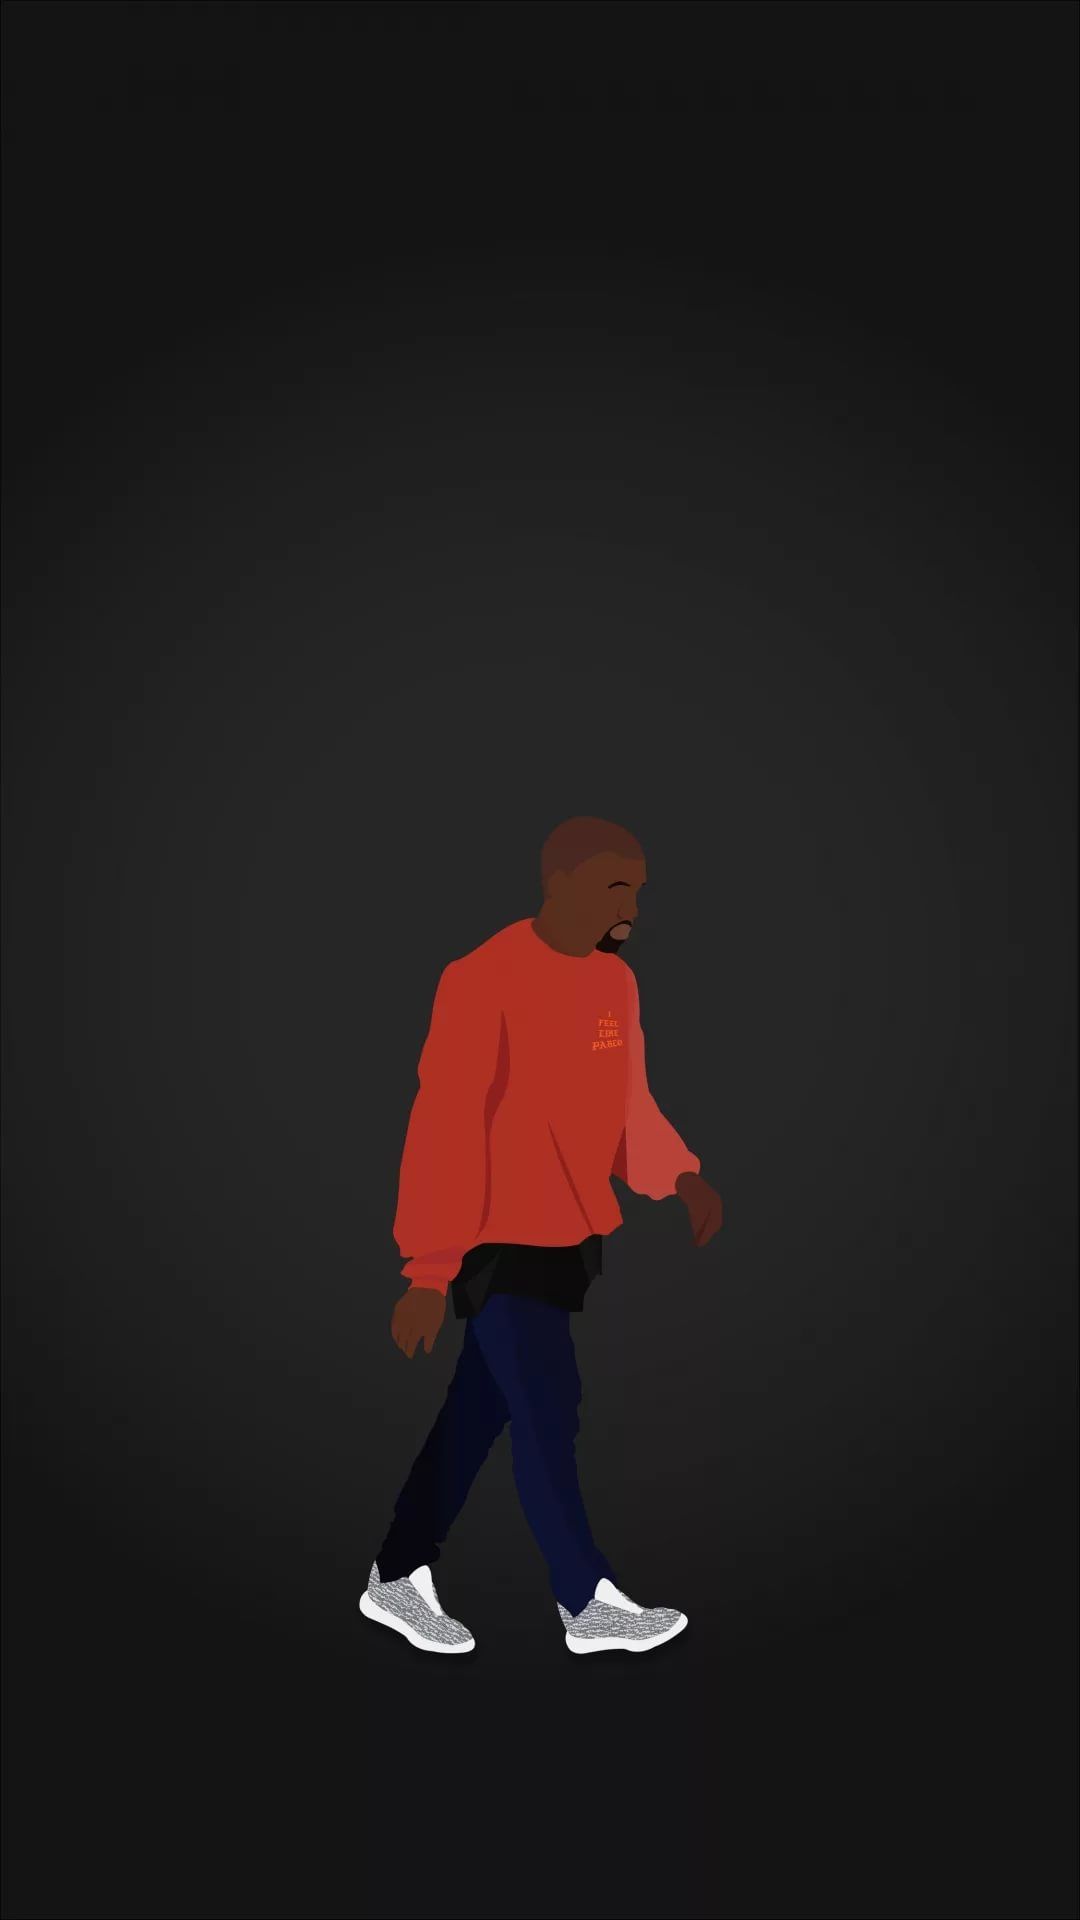 Kanye West Iphone Background